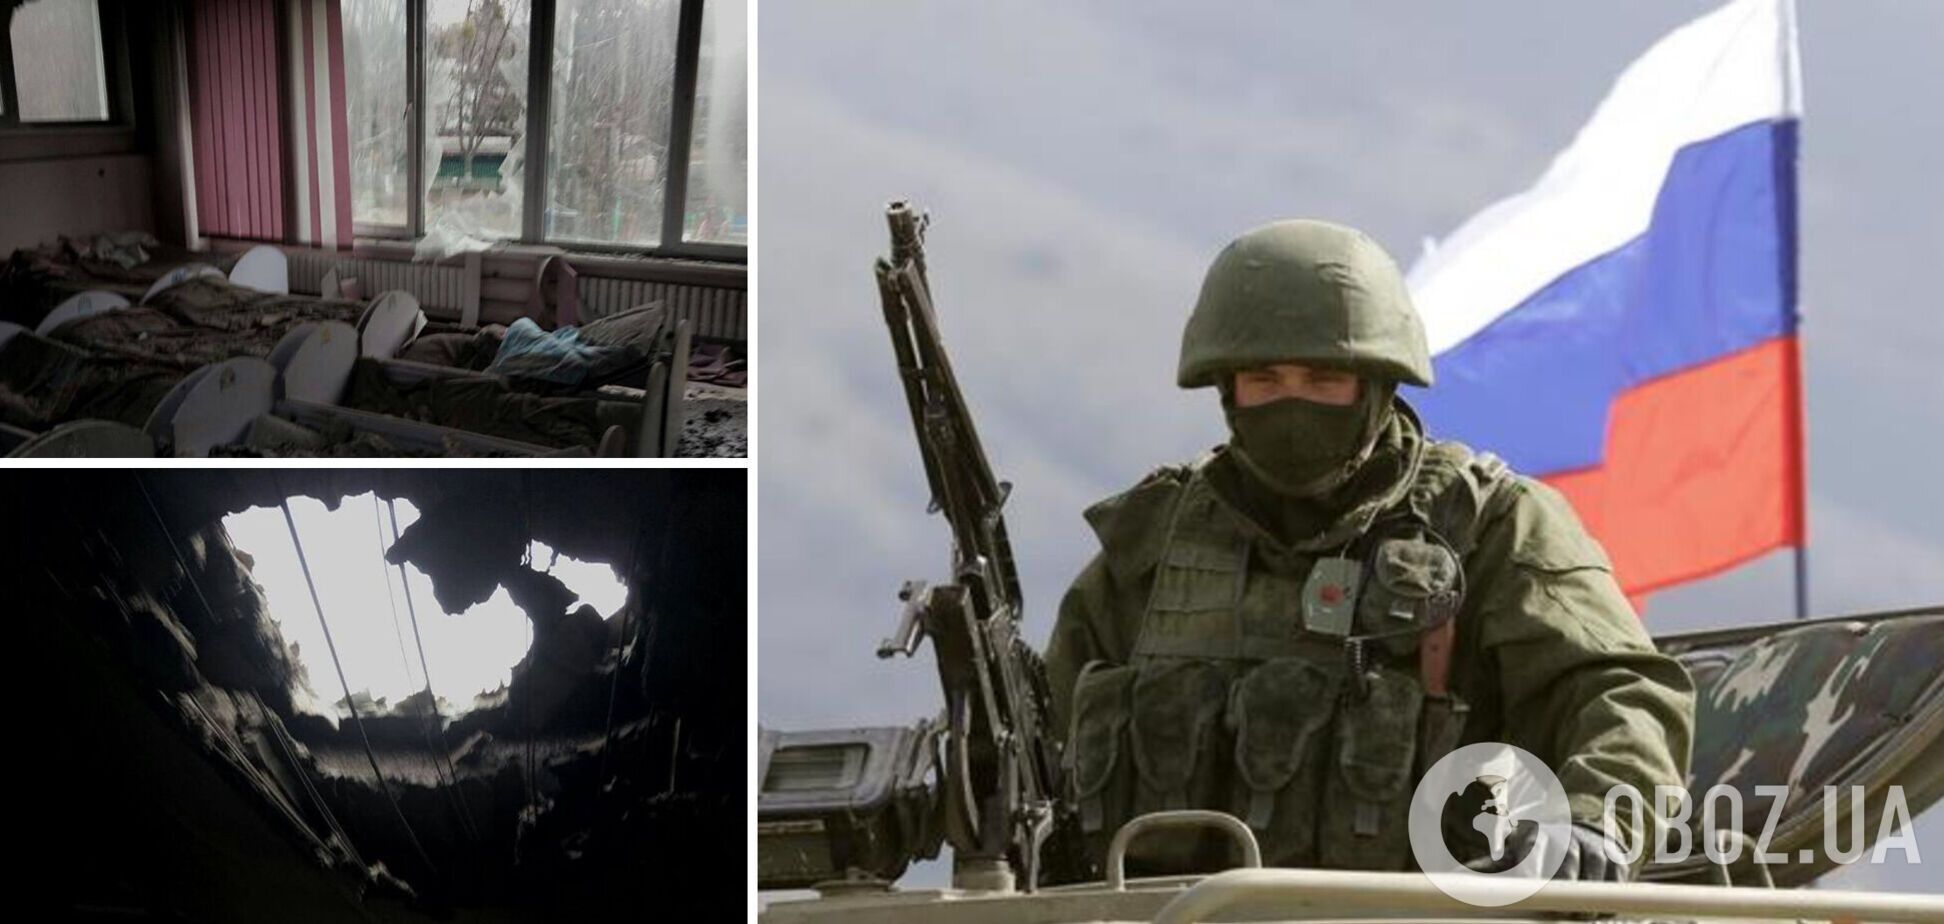 Діра у стелі та завали: у Харкові російські окупанти знищили дитячий садок. Фото